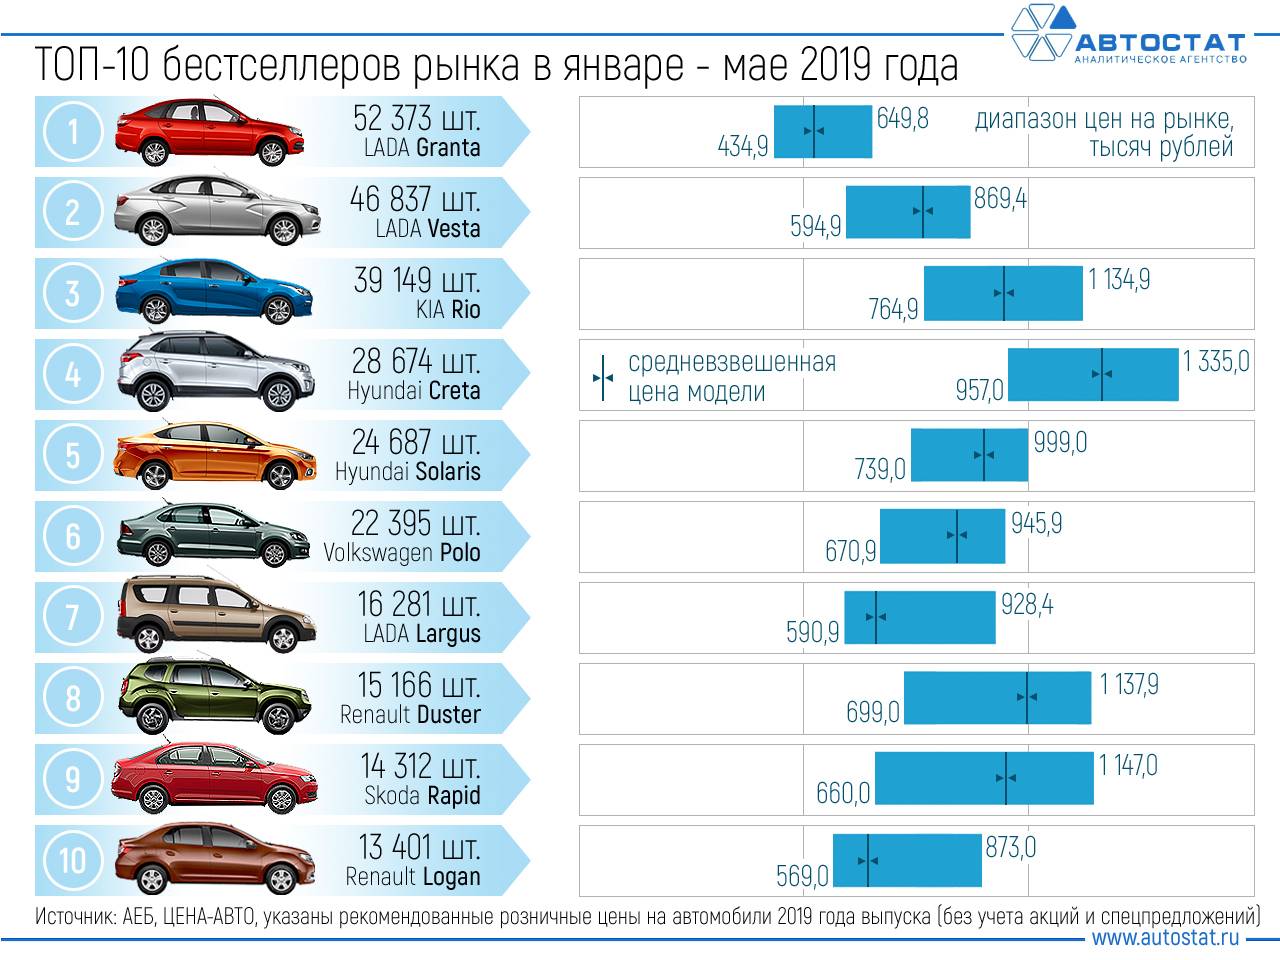 Назван единственный автобренд в России, увеличивший продажи в апреле